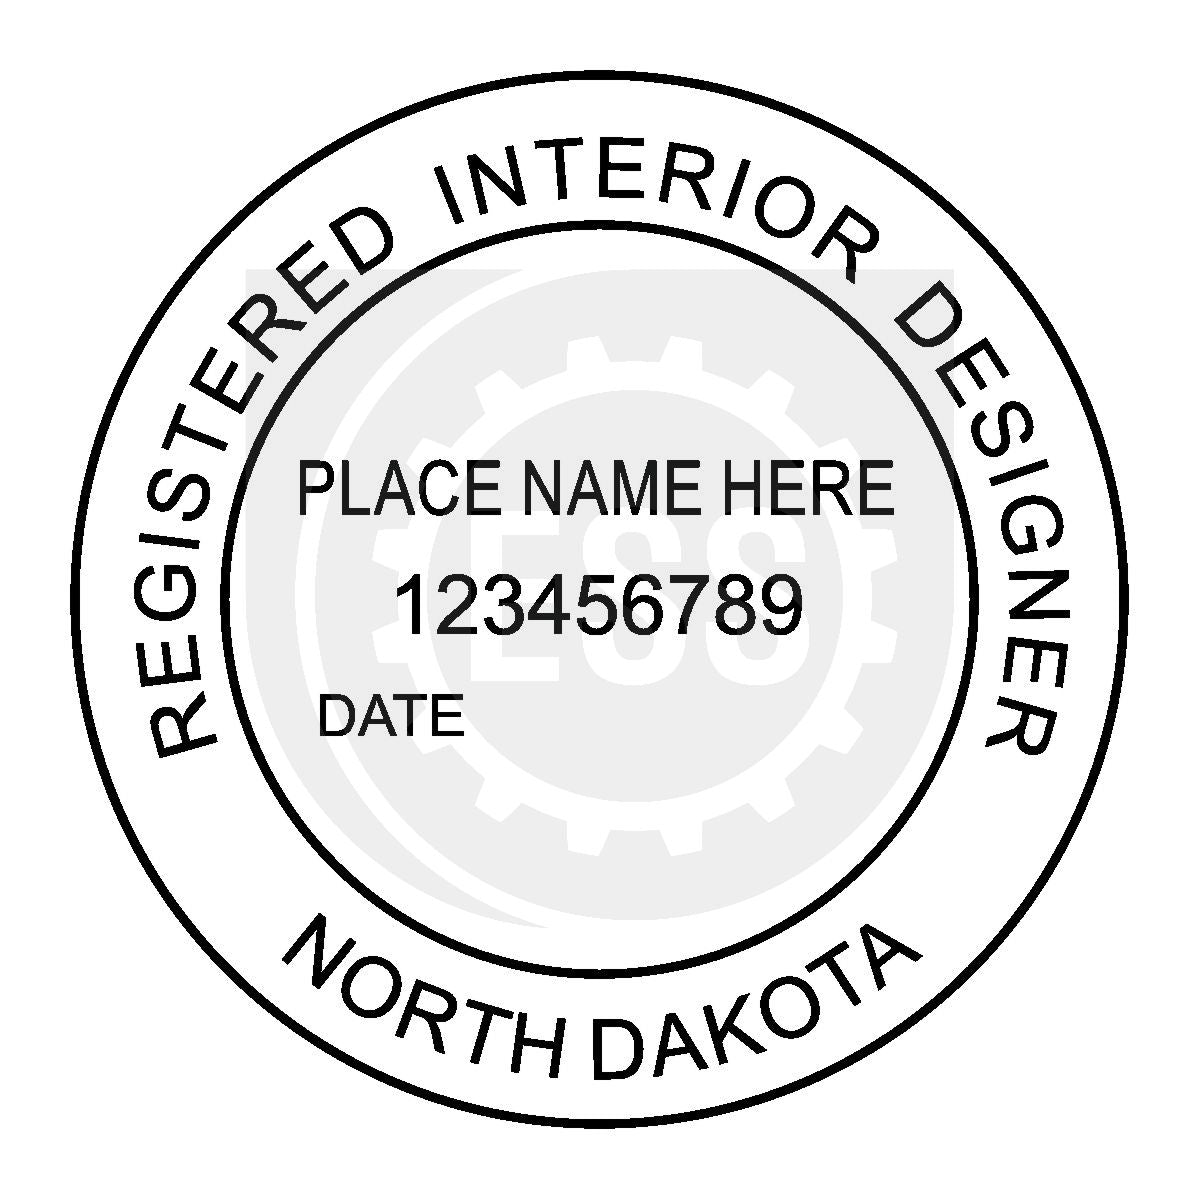 North Dakota Interior Designer Seal Setup